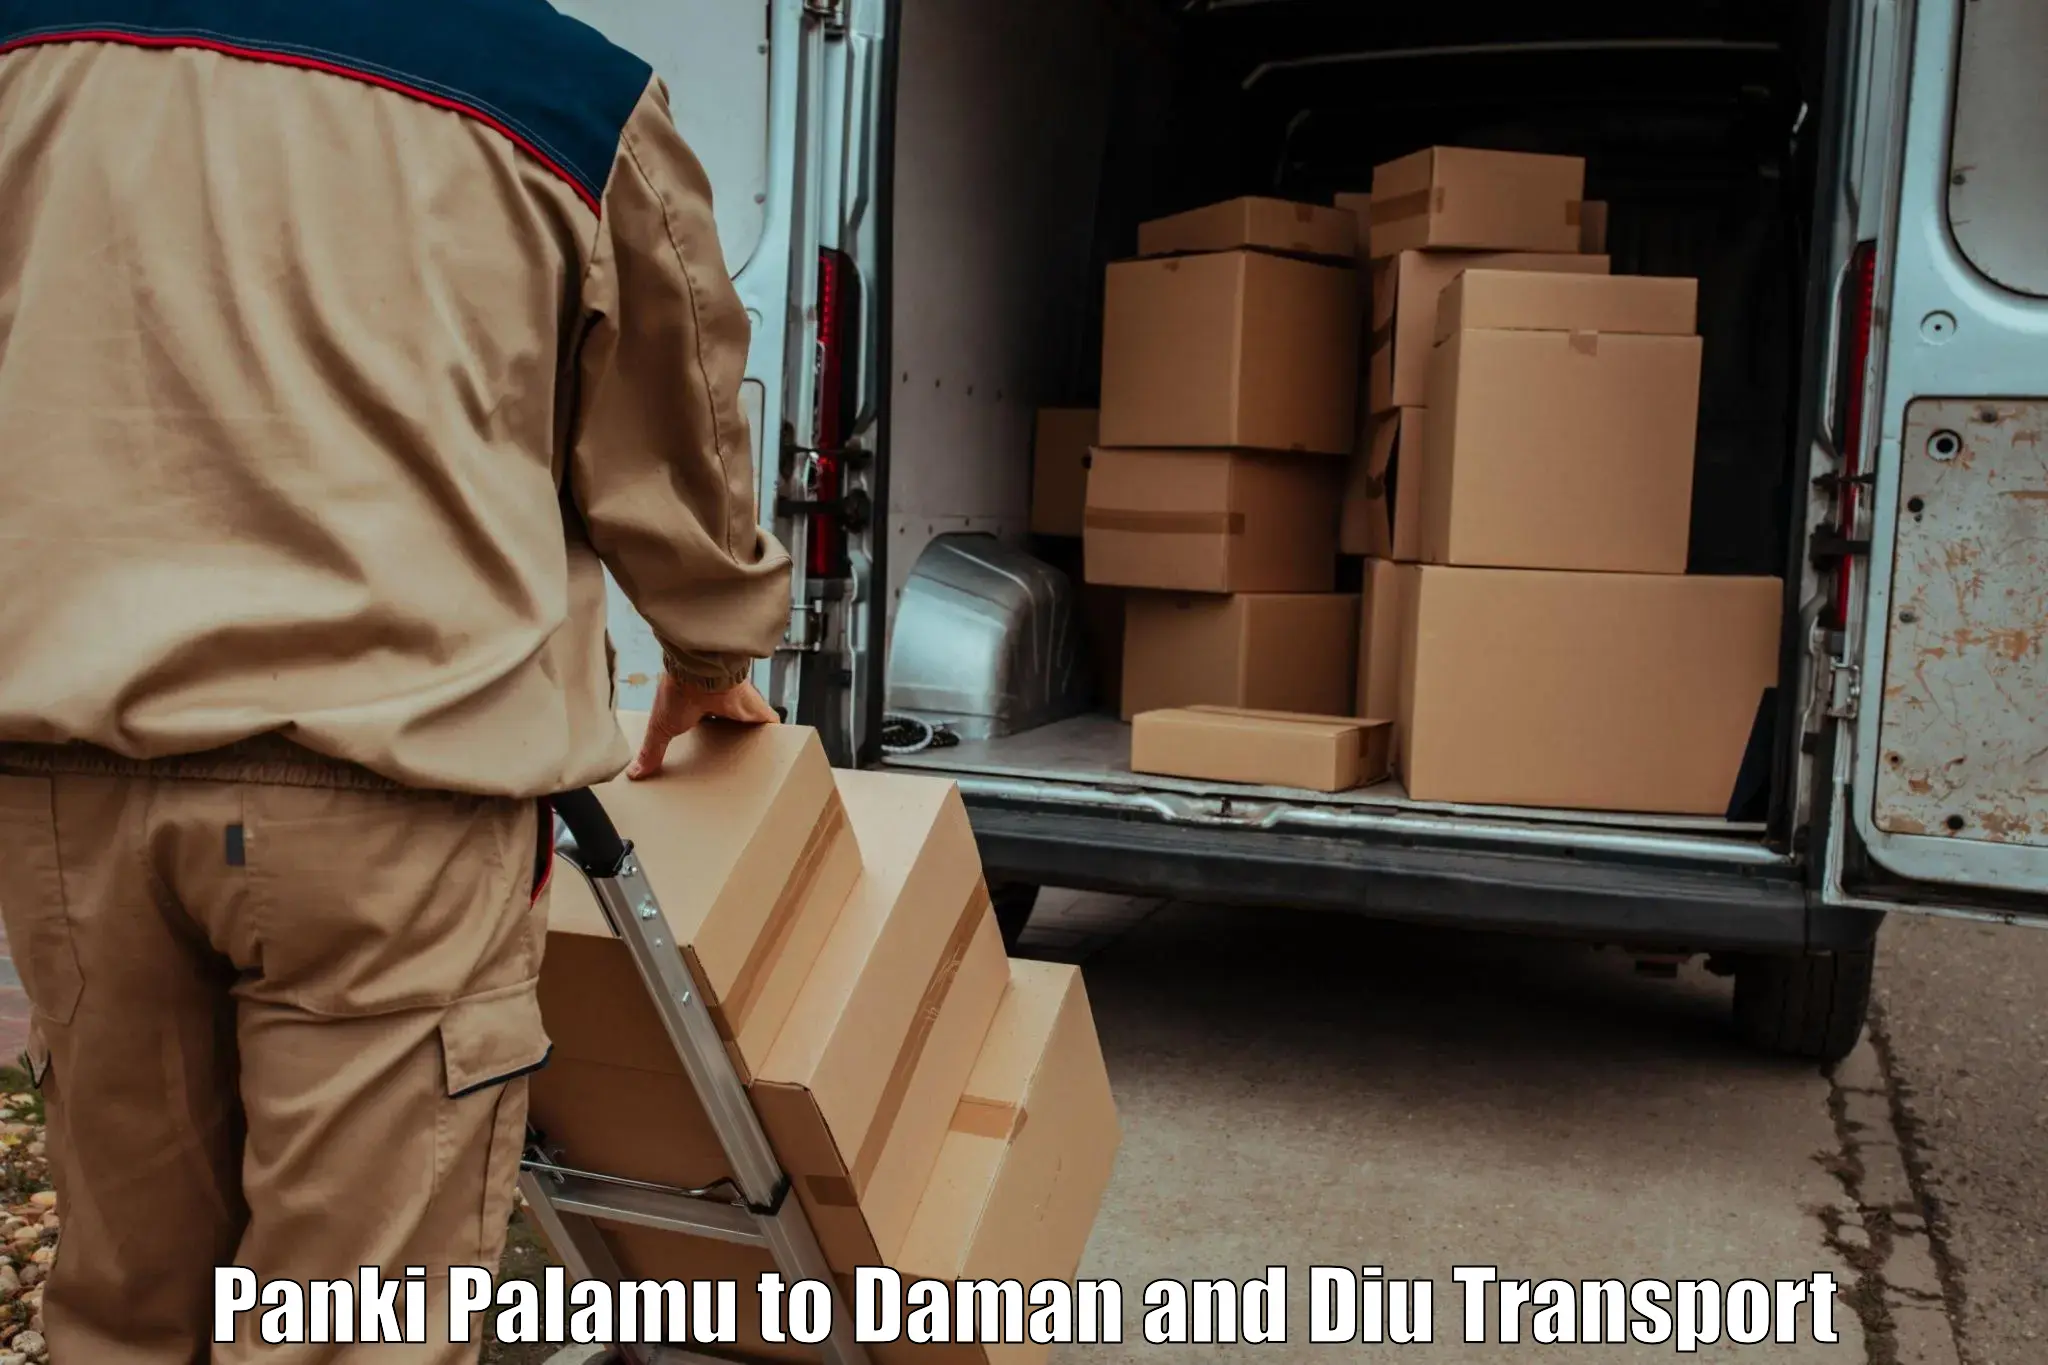 Air freight transport services Panki Palamu to Daman and Diu